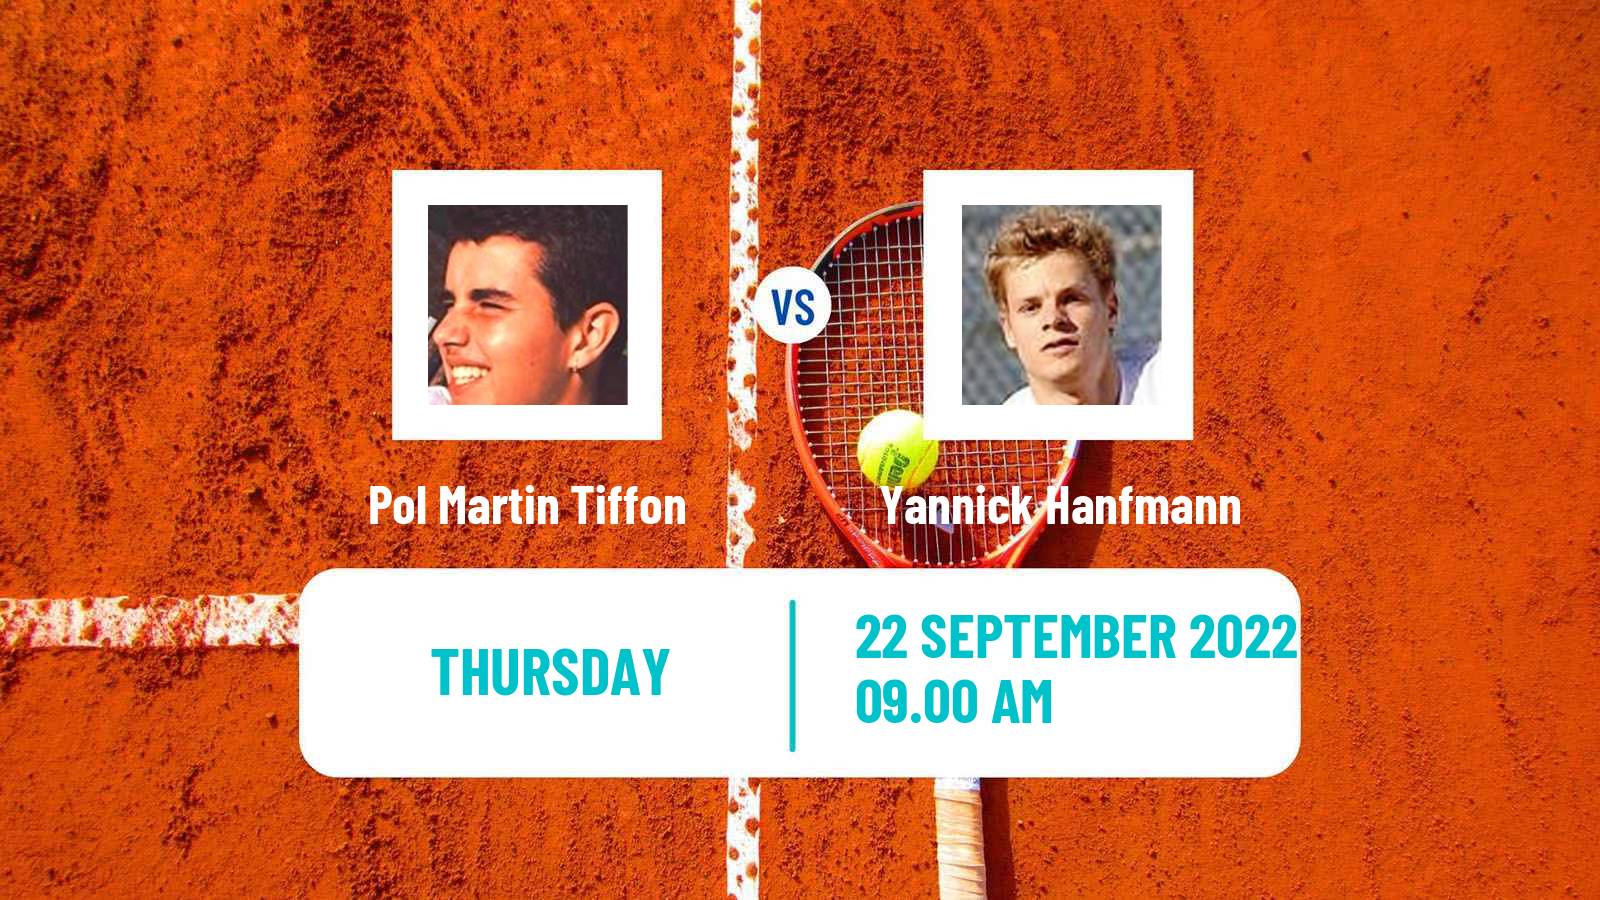 Tennis ATP Challenger Pol Martin Tiffon - Yannick Hanfmann